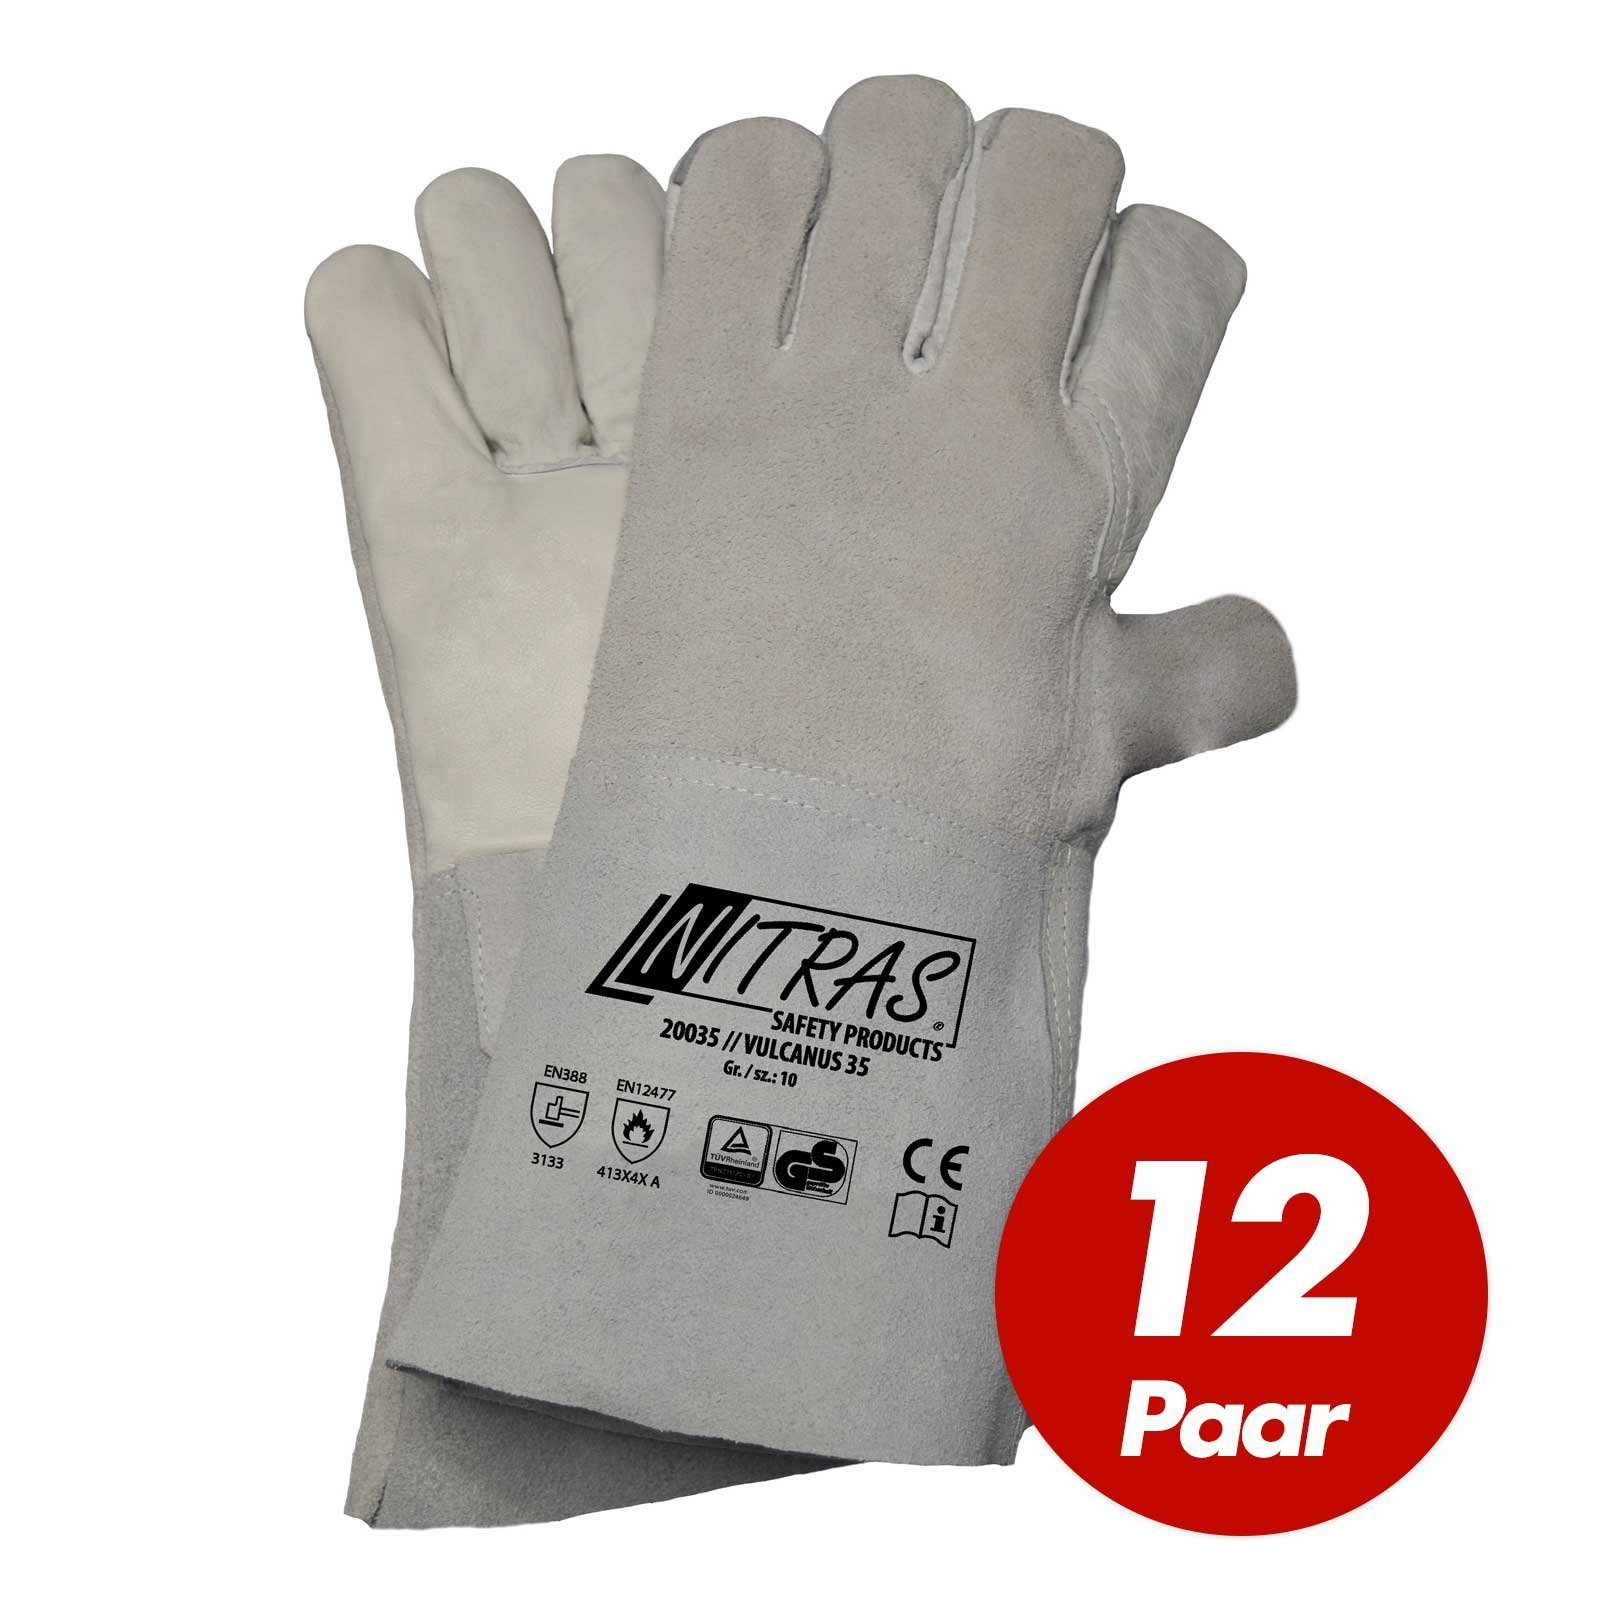 Paar Handschuhe,12 NITRAS (Set) Nitras Vulcanus 20035 Hitzeschutzhandschuhe Schweisserhandschuhe 5-Finger